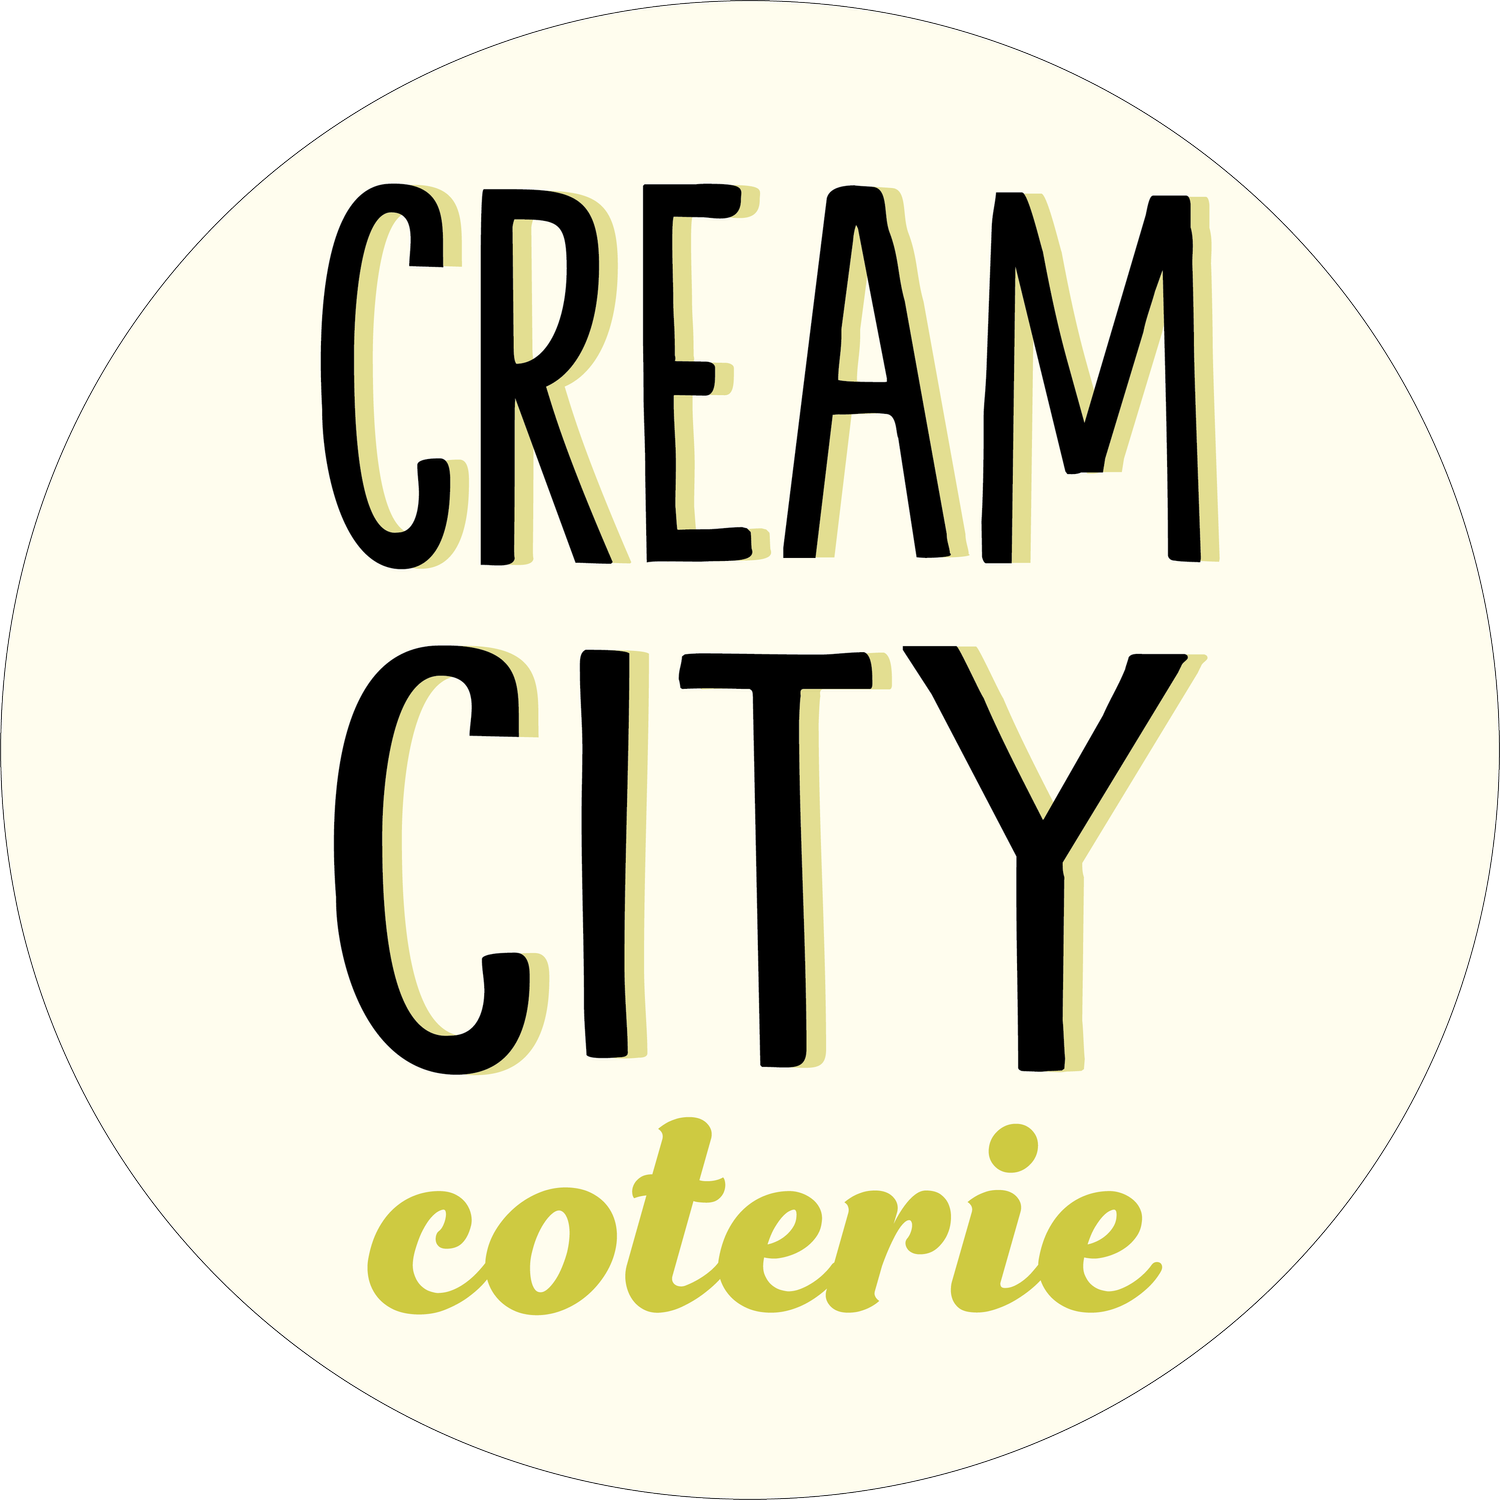 Cream City Coterie